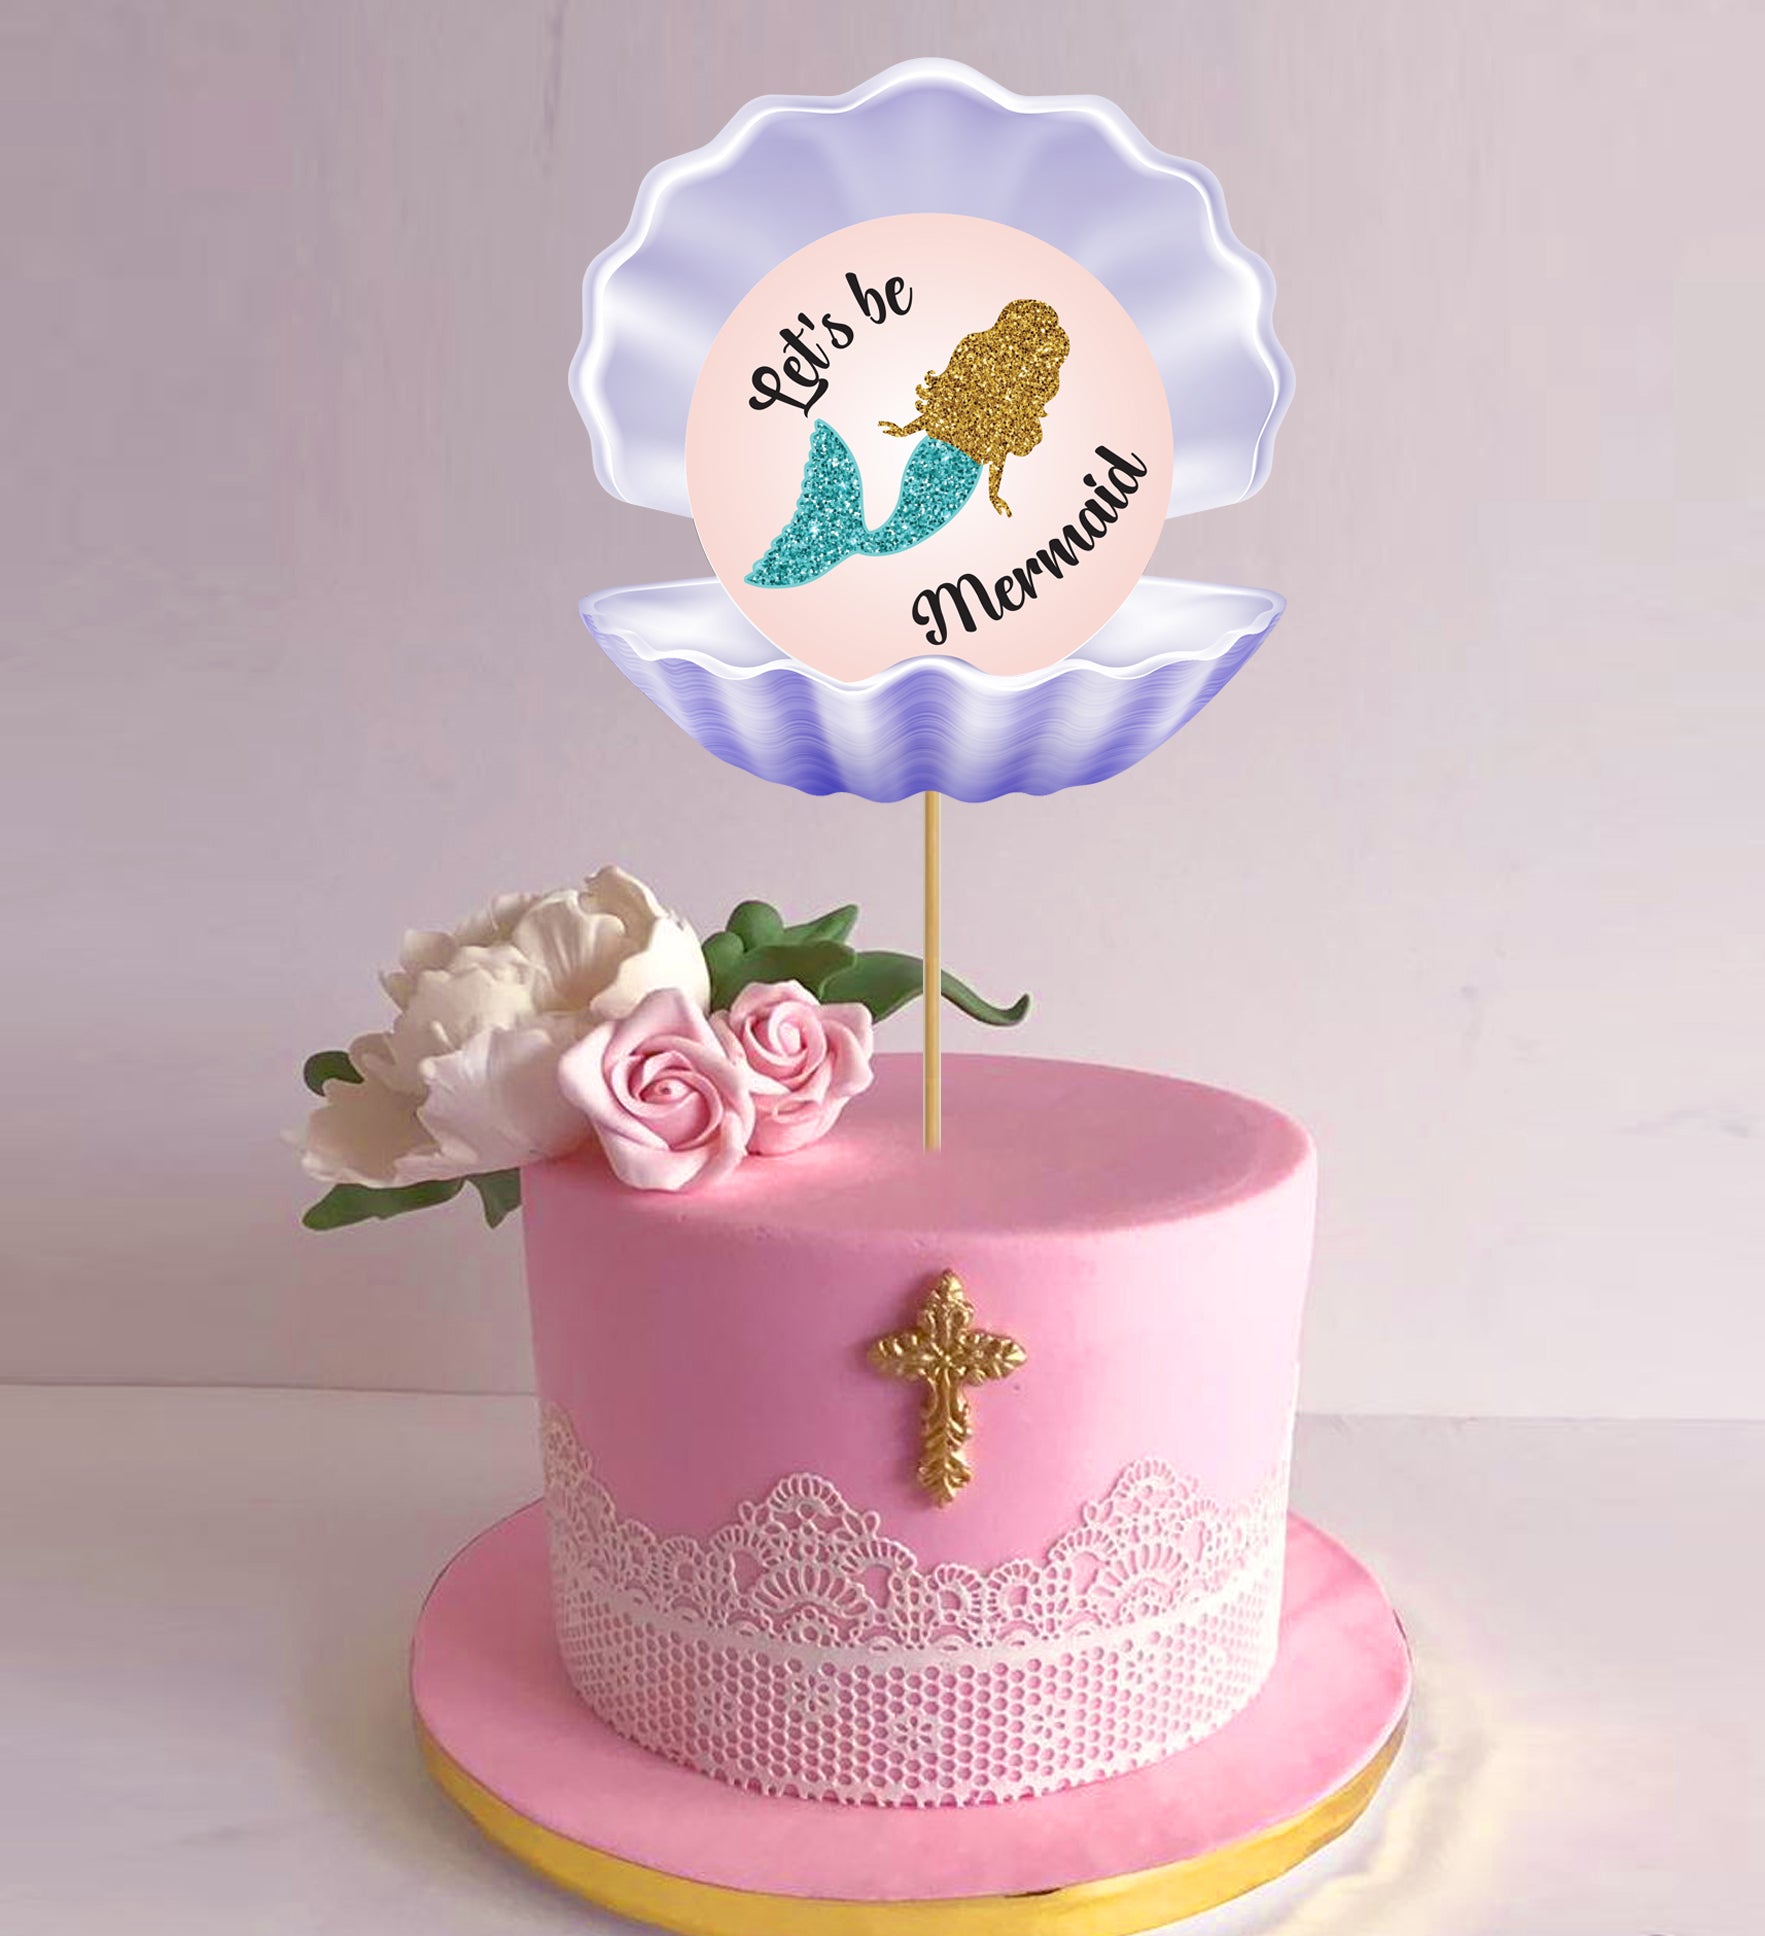 Mermaid themed baby shower cake | Jenny Wenny | Flickr